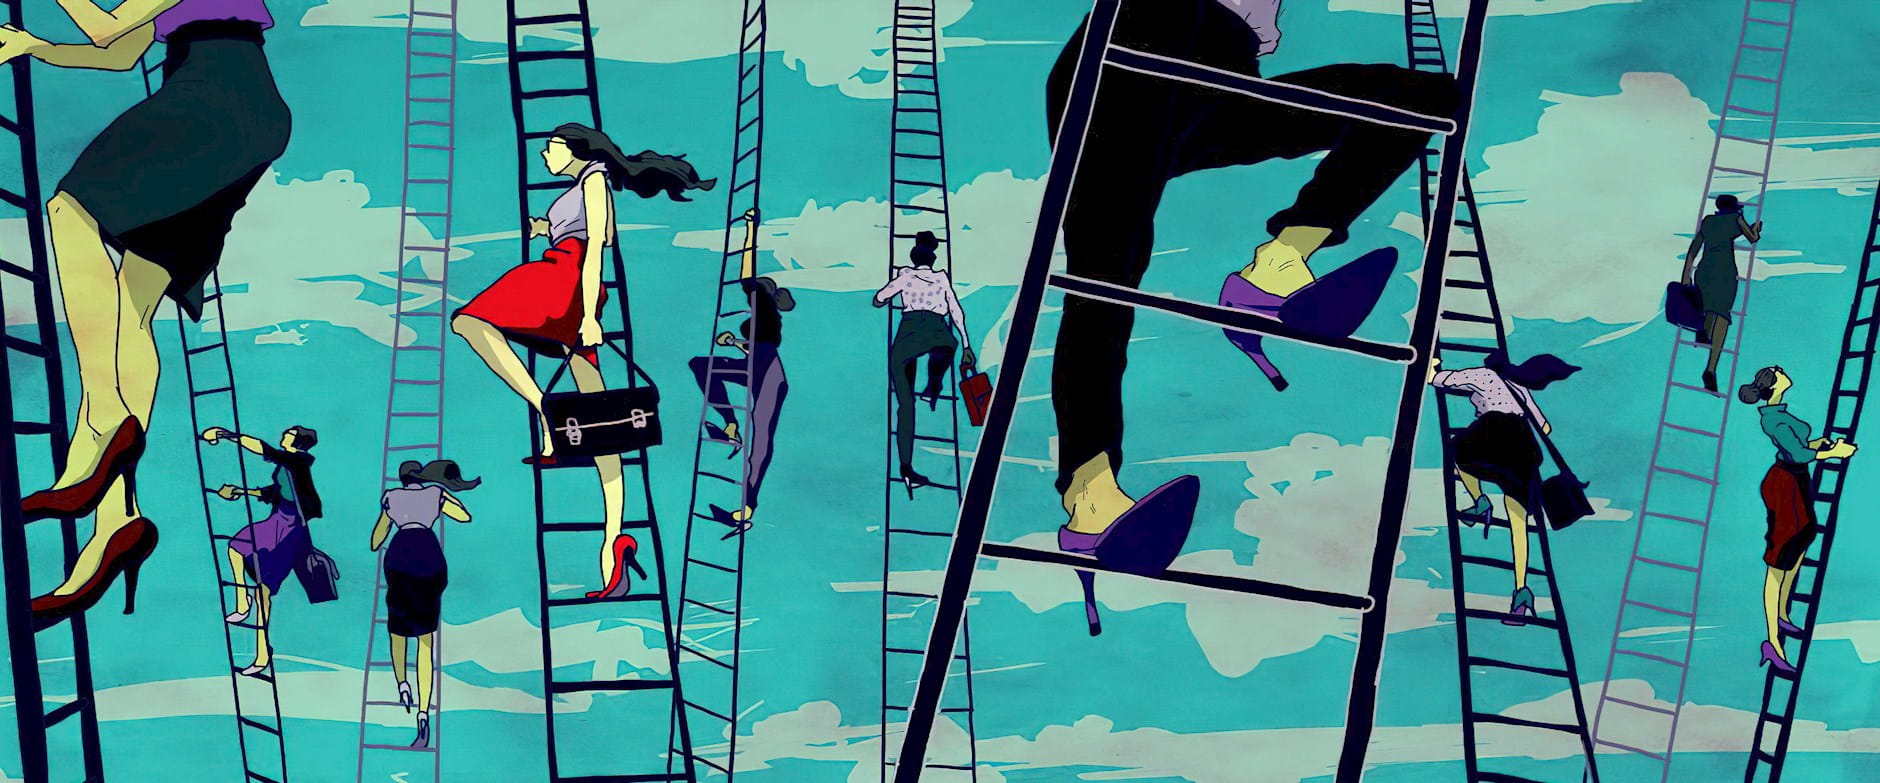 Women climbing ladders